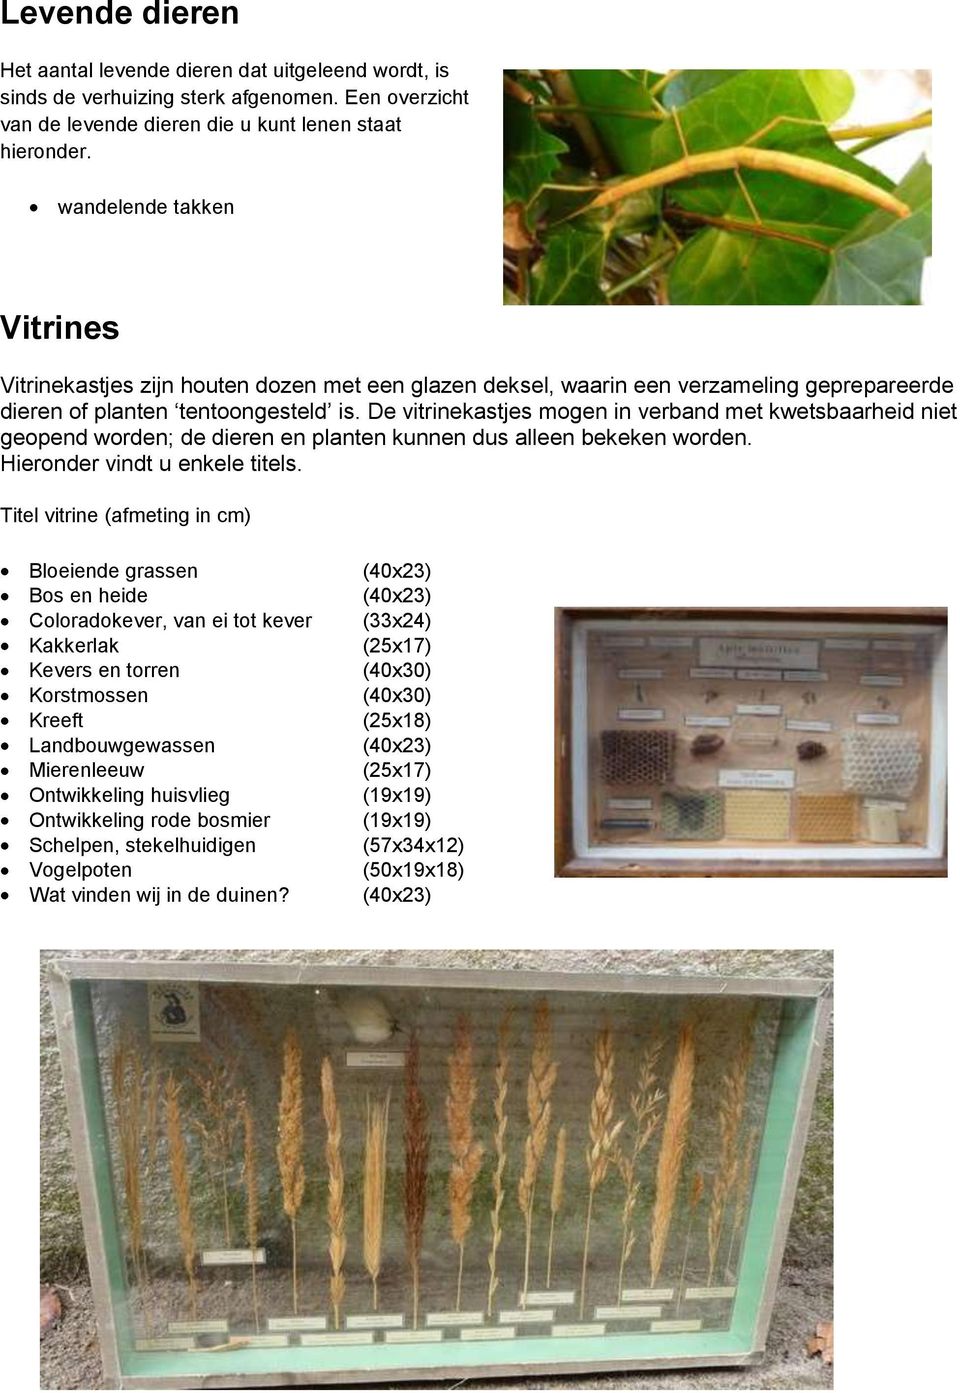 De vitrinekastjes mogen in verband met kwetsbaarheid niet geopend worden; de dieren en planten kunnen dus alleen bekeken worden. Hieronder vindt u enkele titels.